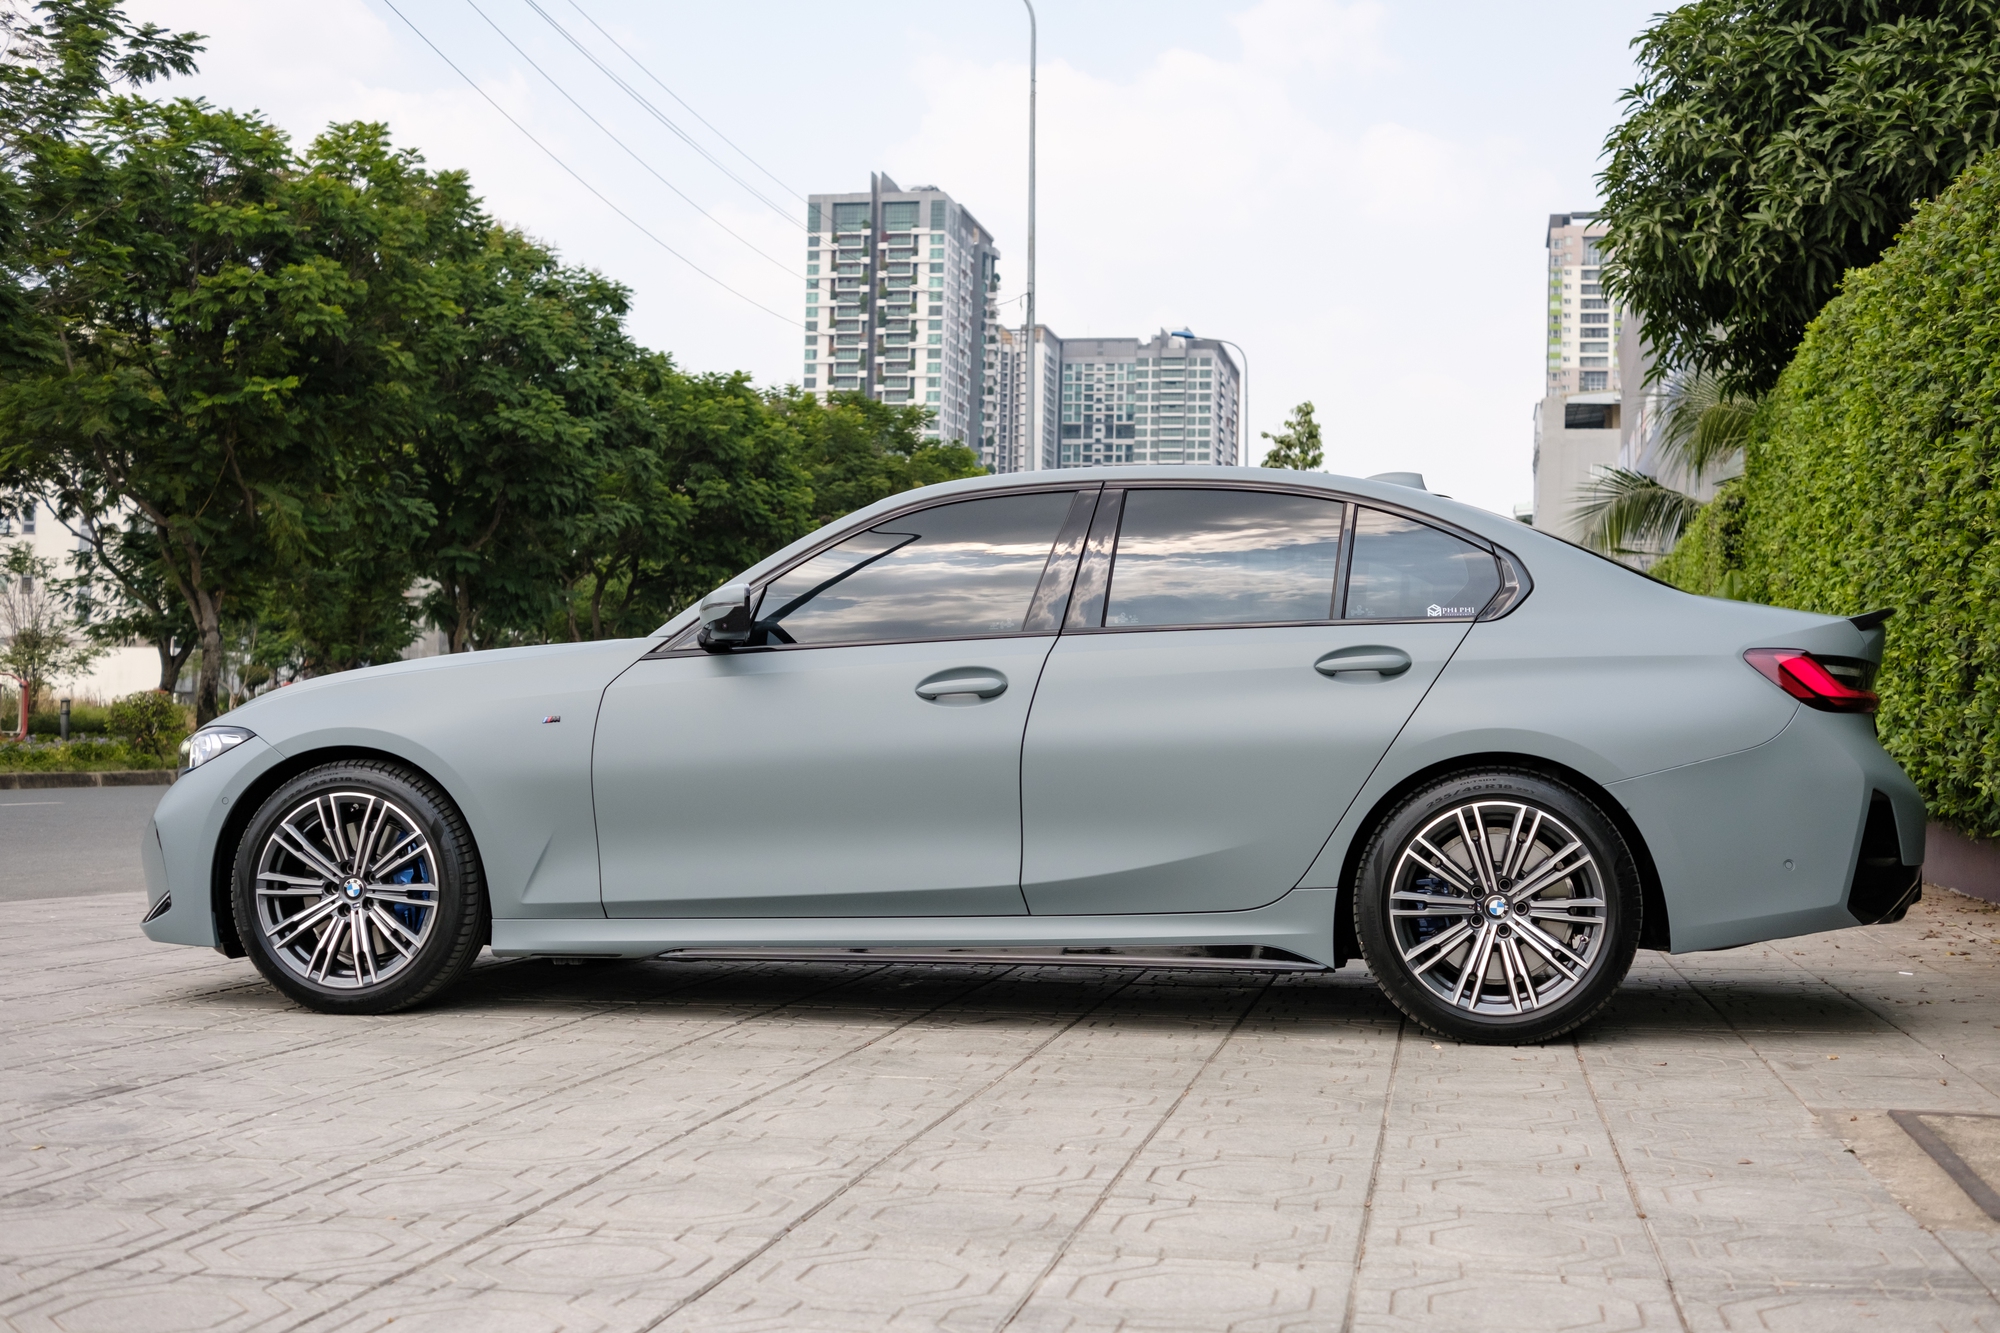 Thợ Việt lột xác BMW 330i cũ thành bản mới trong 2 ngày: Toàn hàng chính hãng, hết 140 triệu đồng  - Ảnh 6.